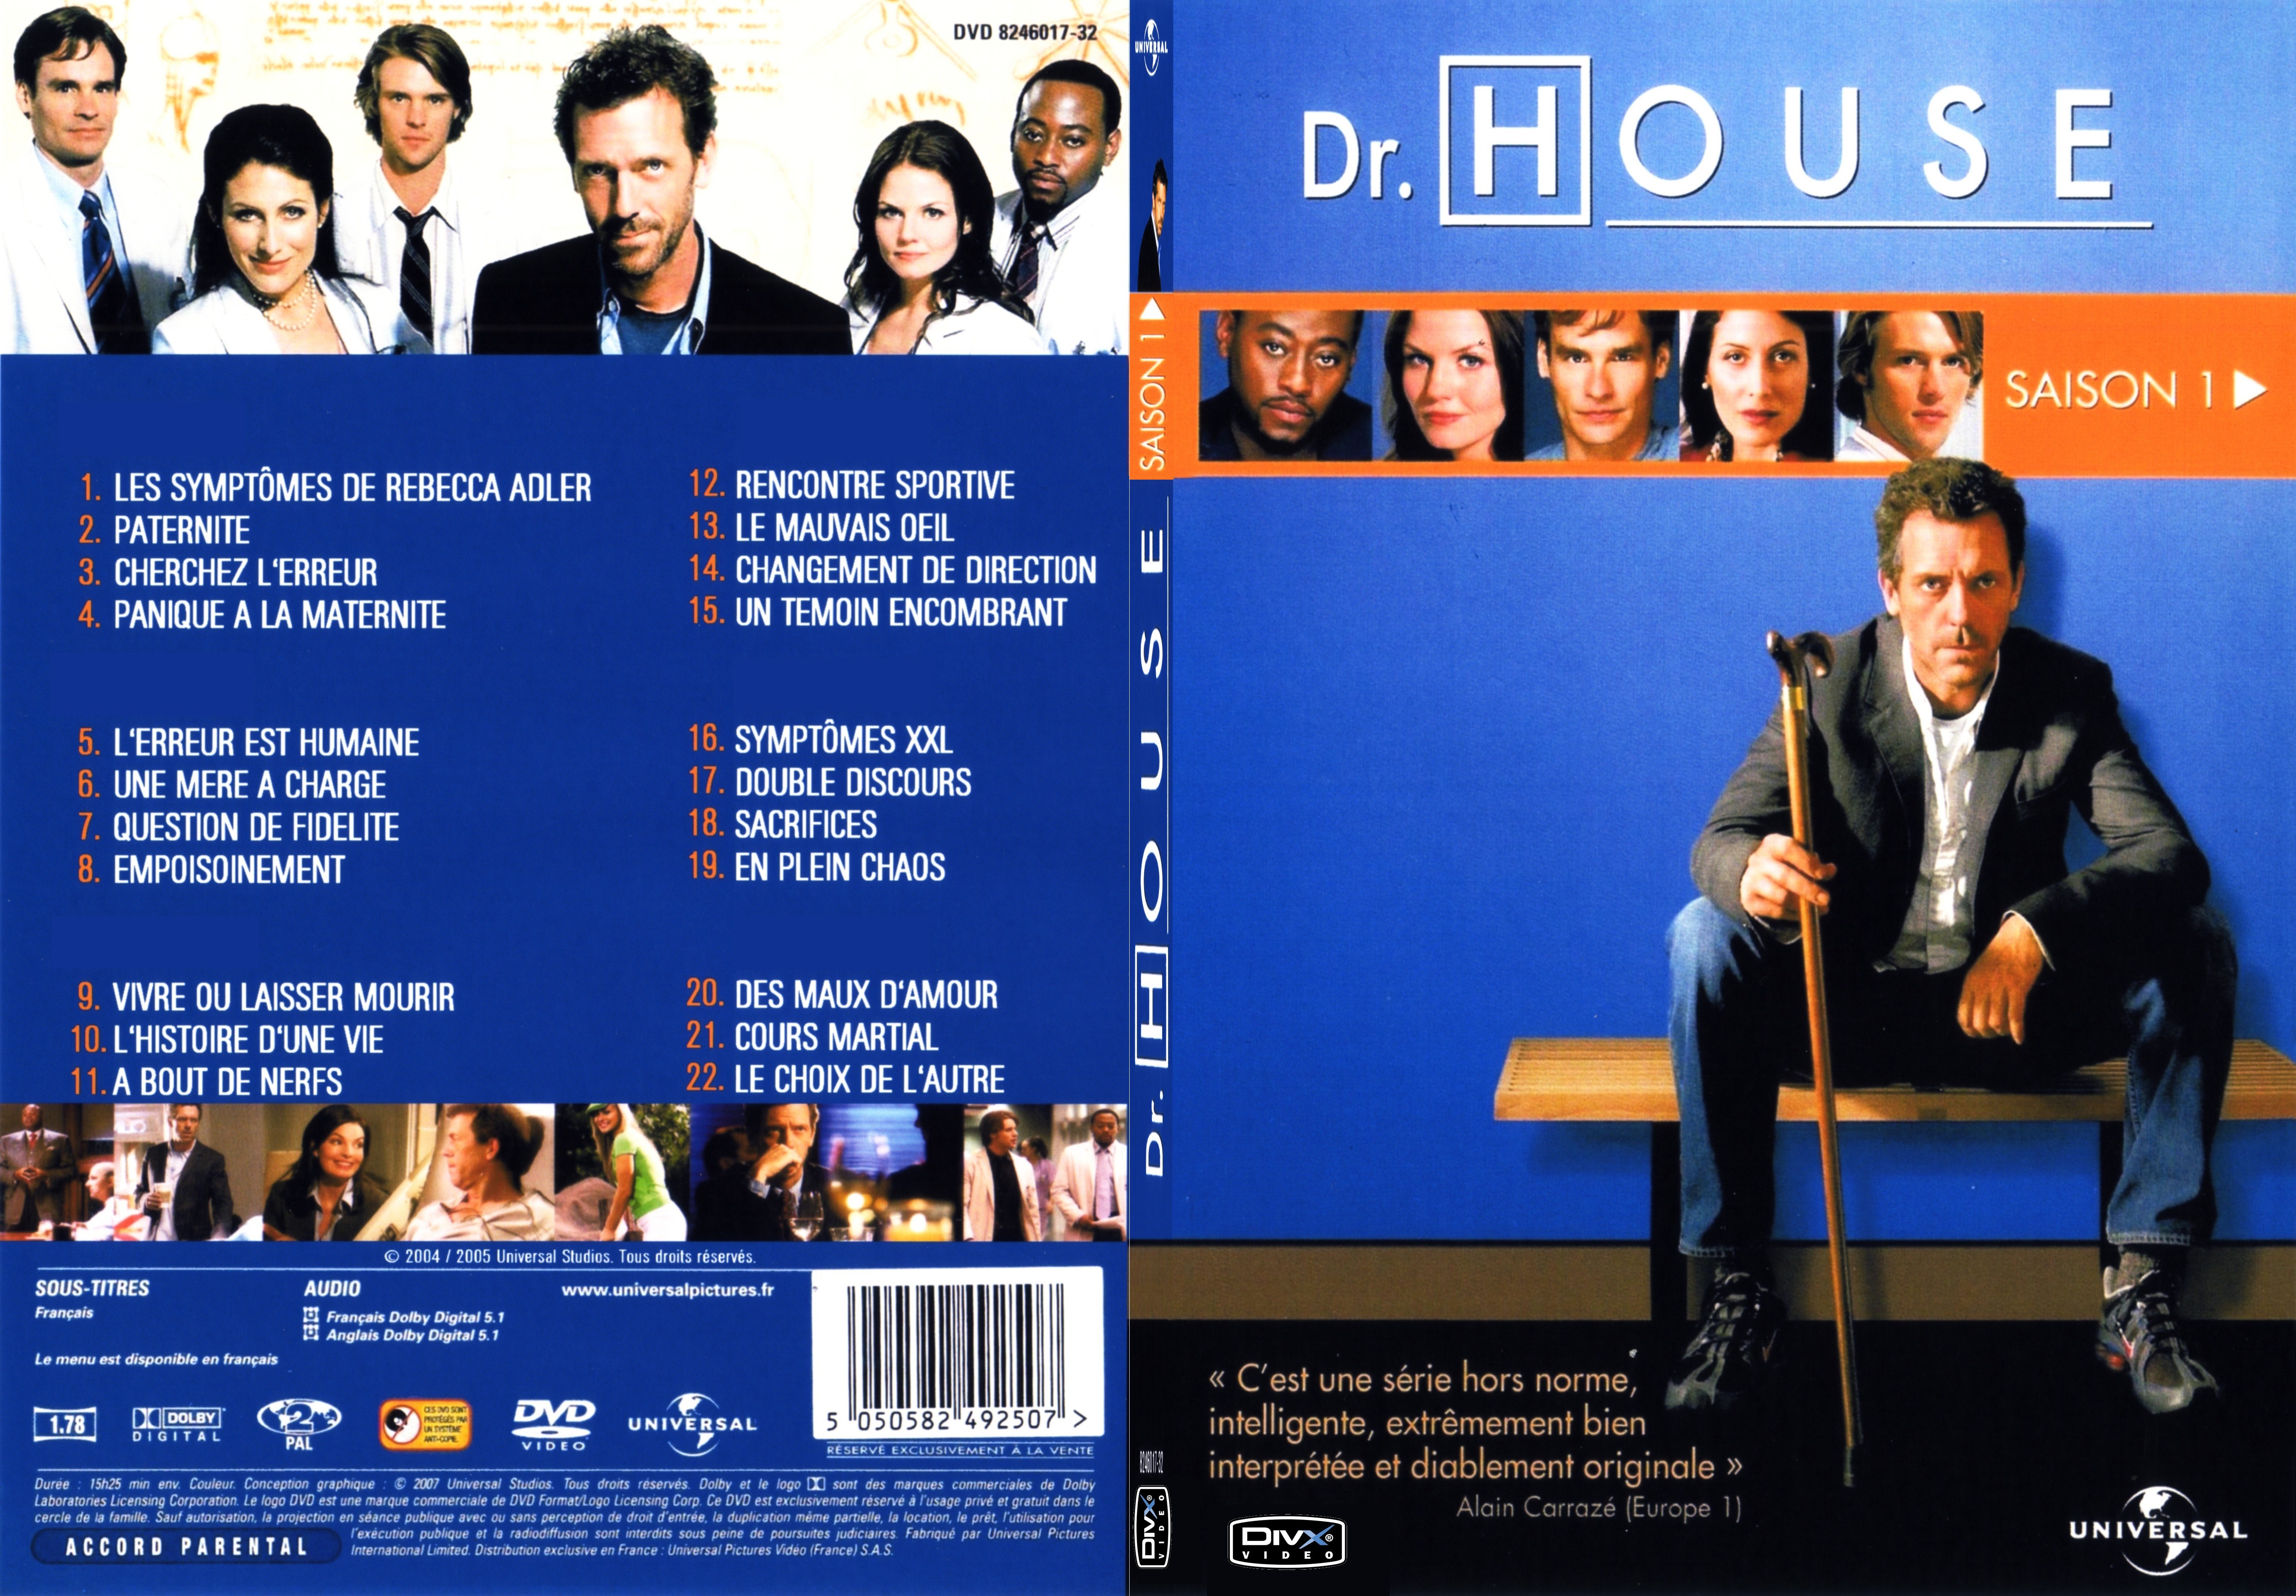 Jaquette DVD Dr House Saison 1 - SLIM